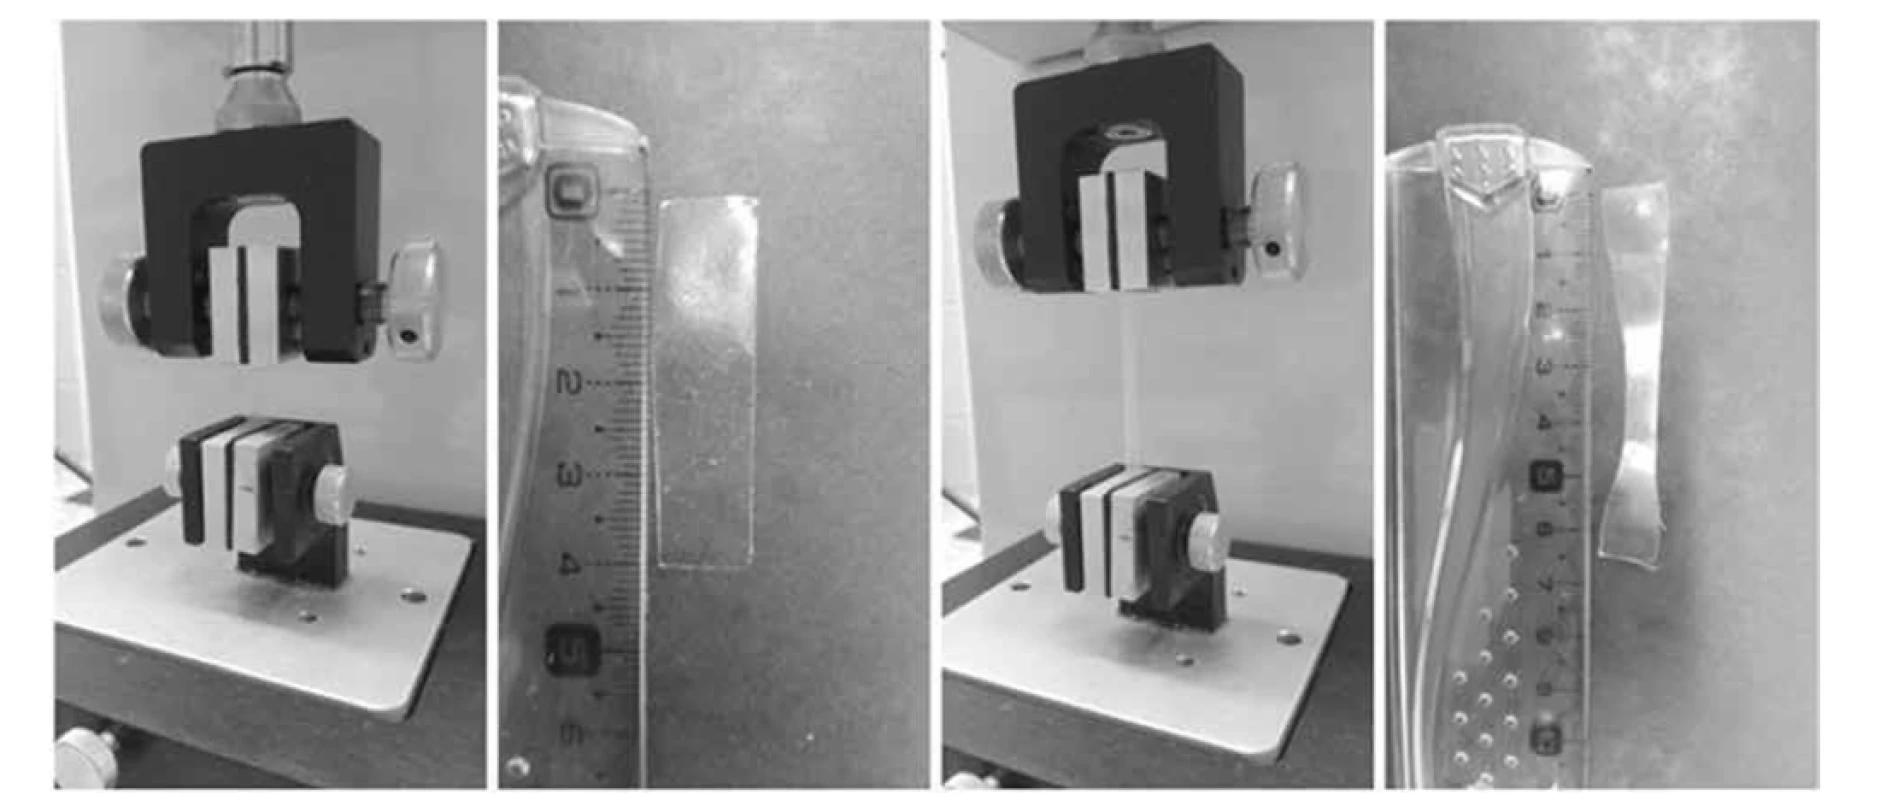 Měření pevnosti v tahu – stav proužku filmu před zahájením testu (vlevo) a po ukončení testu (vpravo)